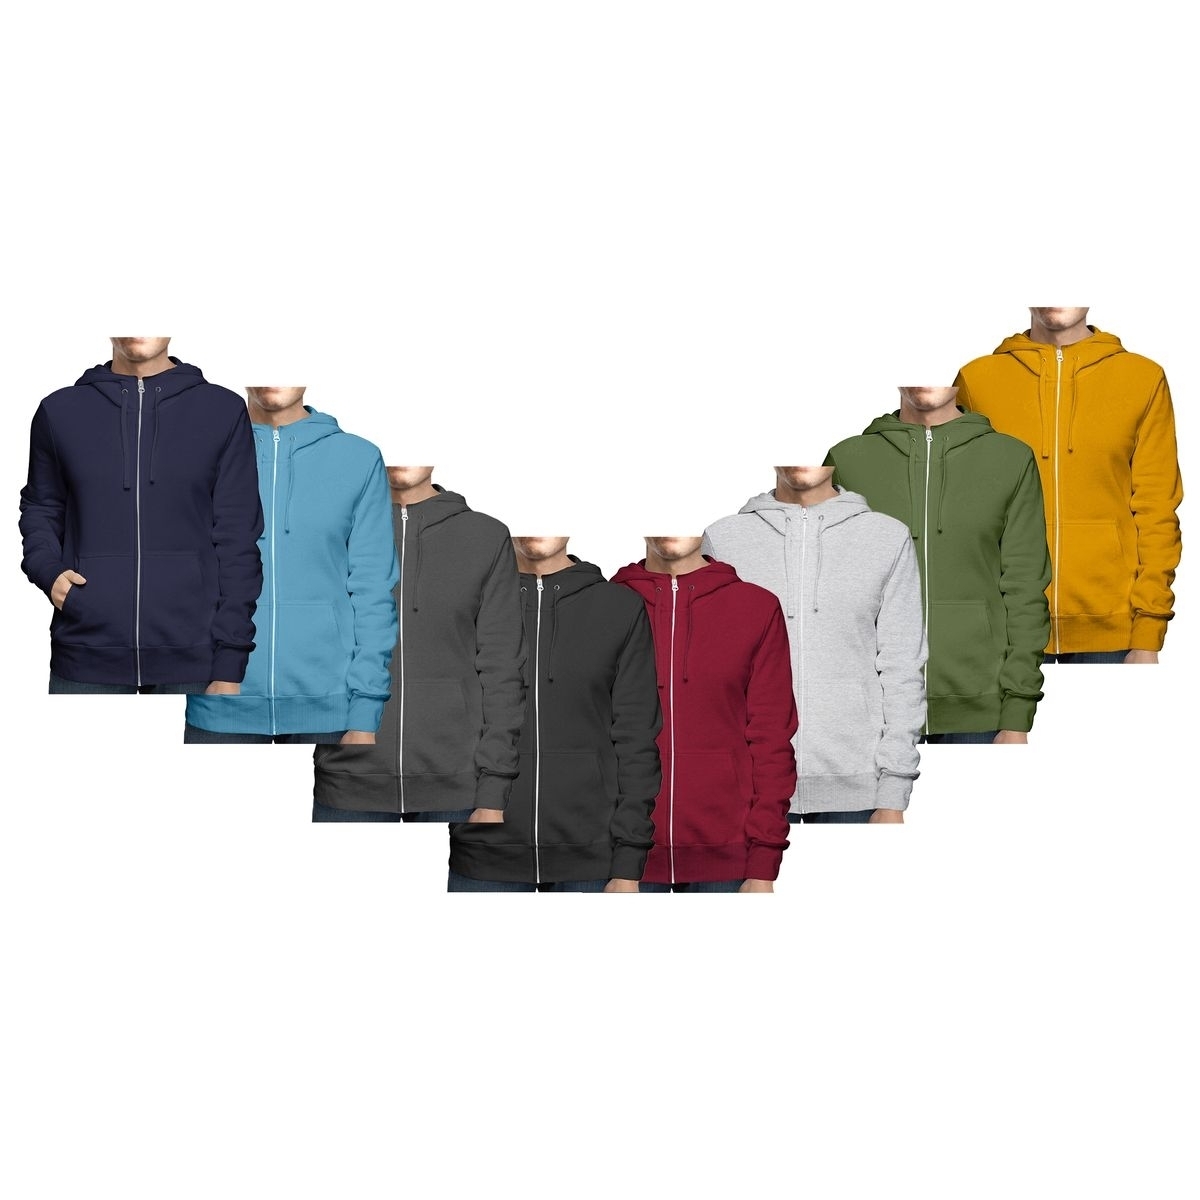 Men's Big & Tall Winter Warm Soft Cozy Full Zip-Up Fleece Lined Hoodie Sweatshirt - Navy, XX-Large